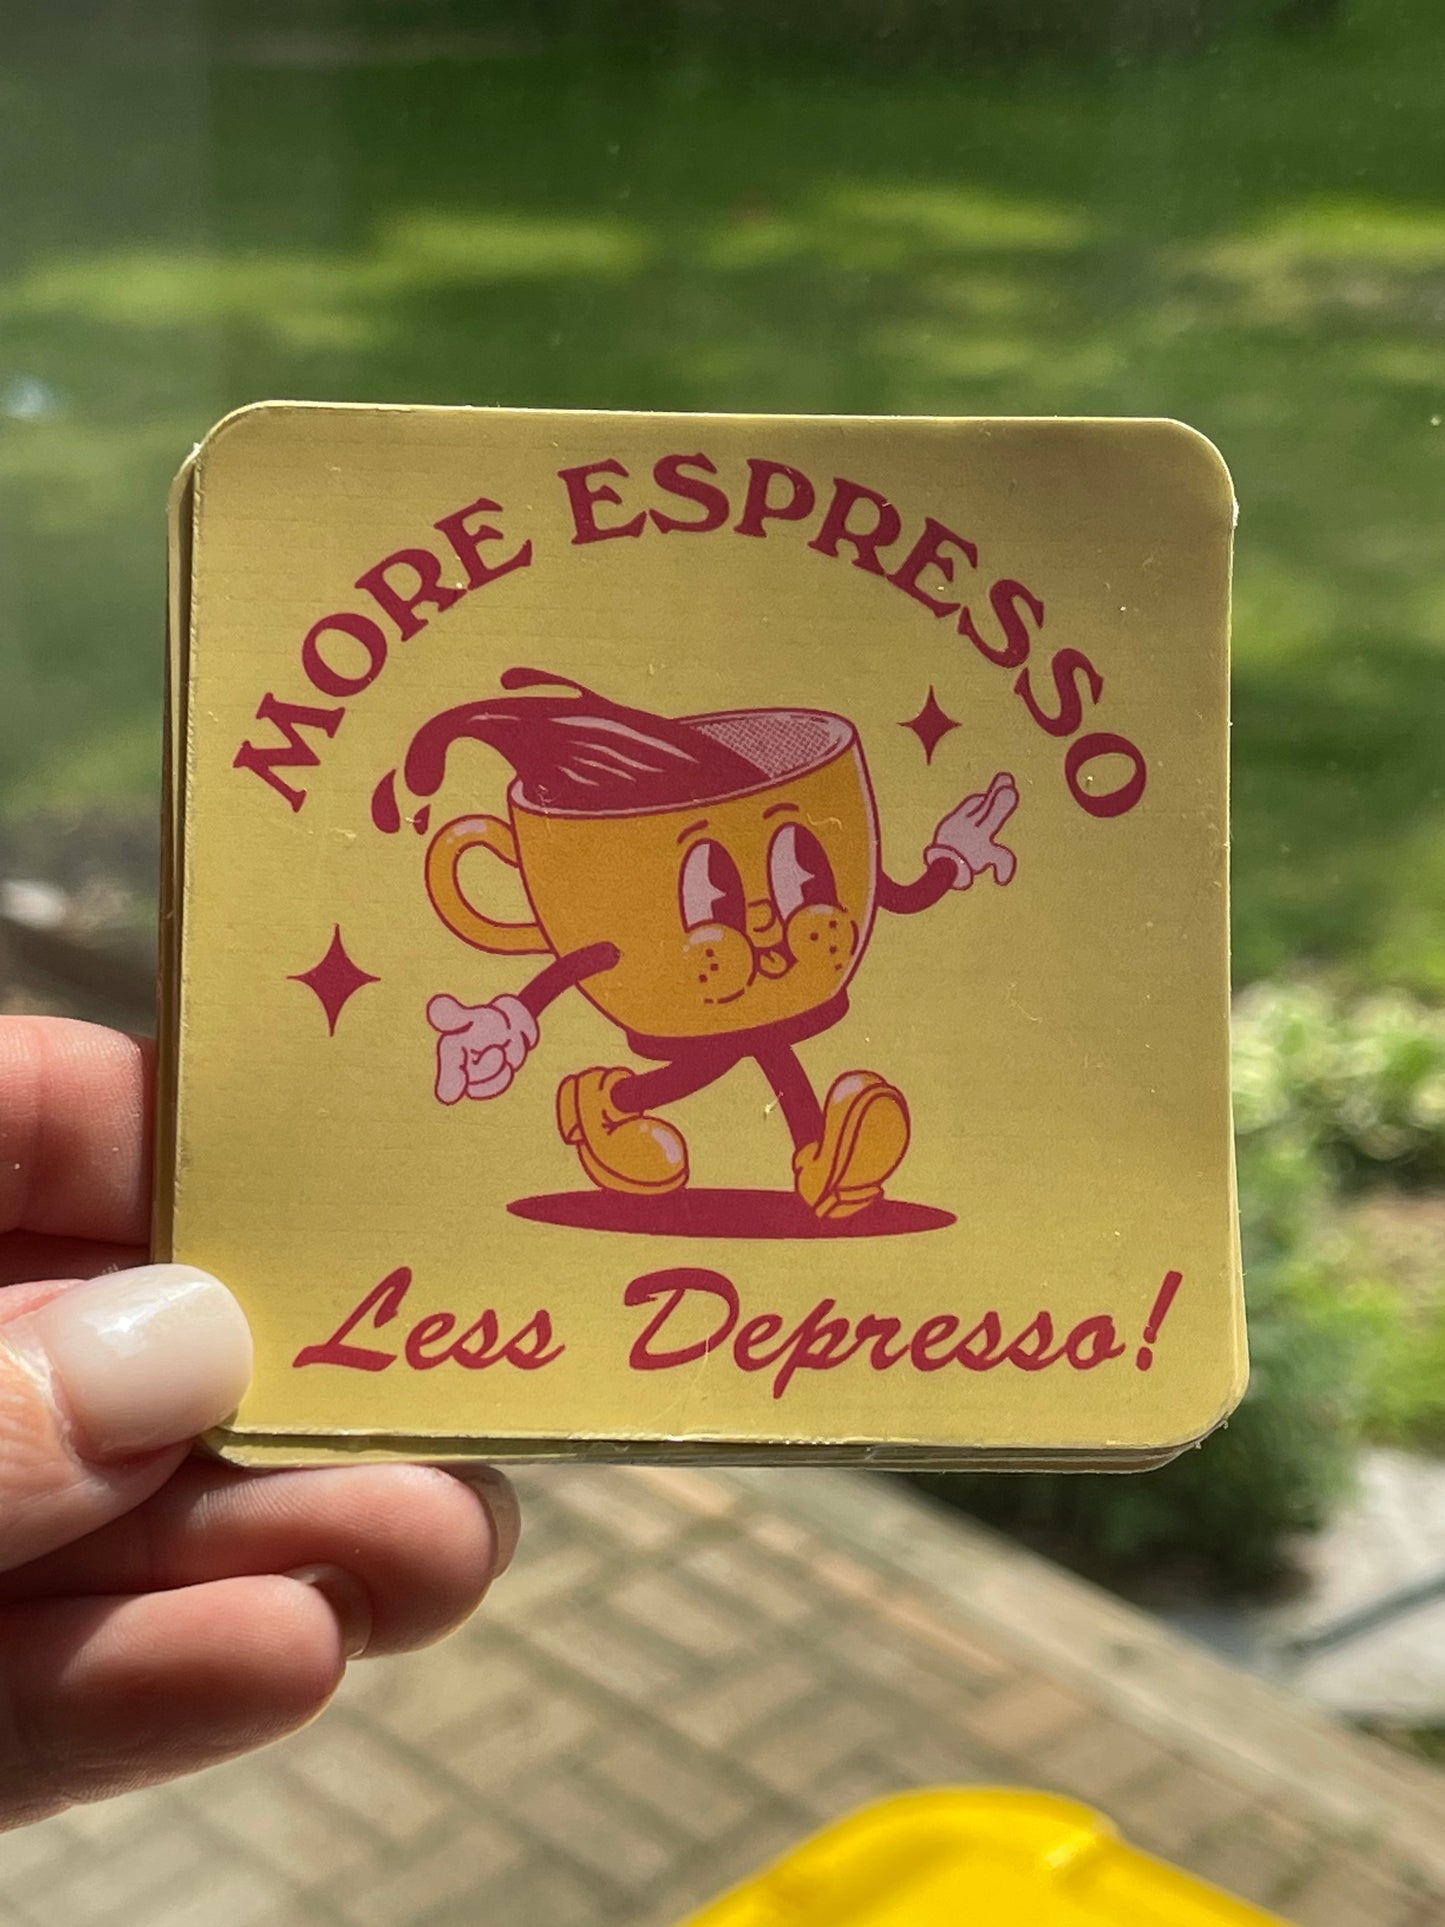 More Espresso, Less Depresso. Srick